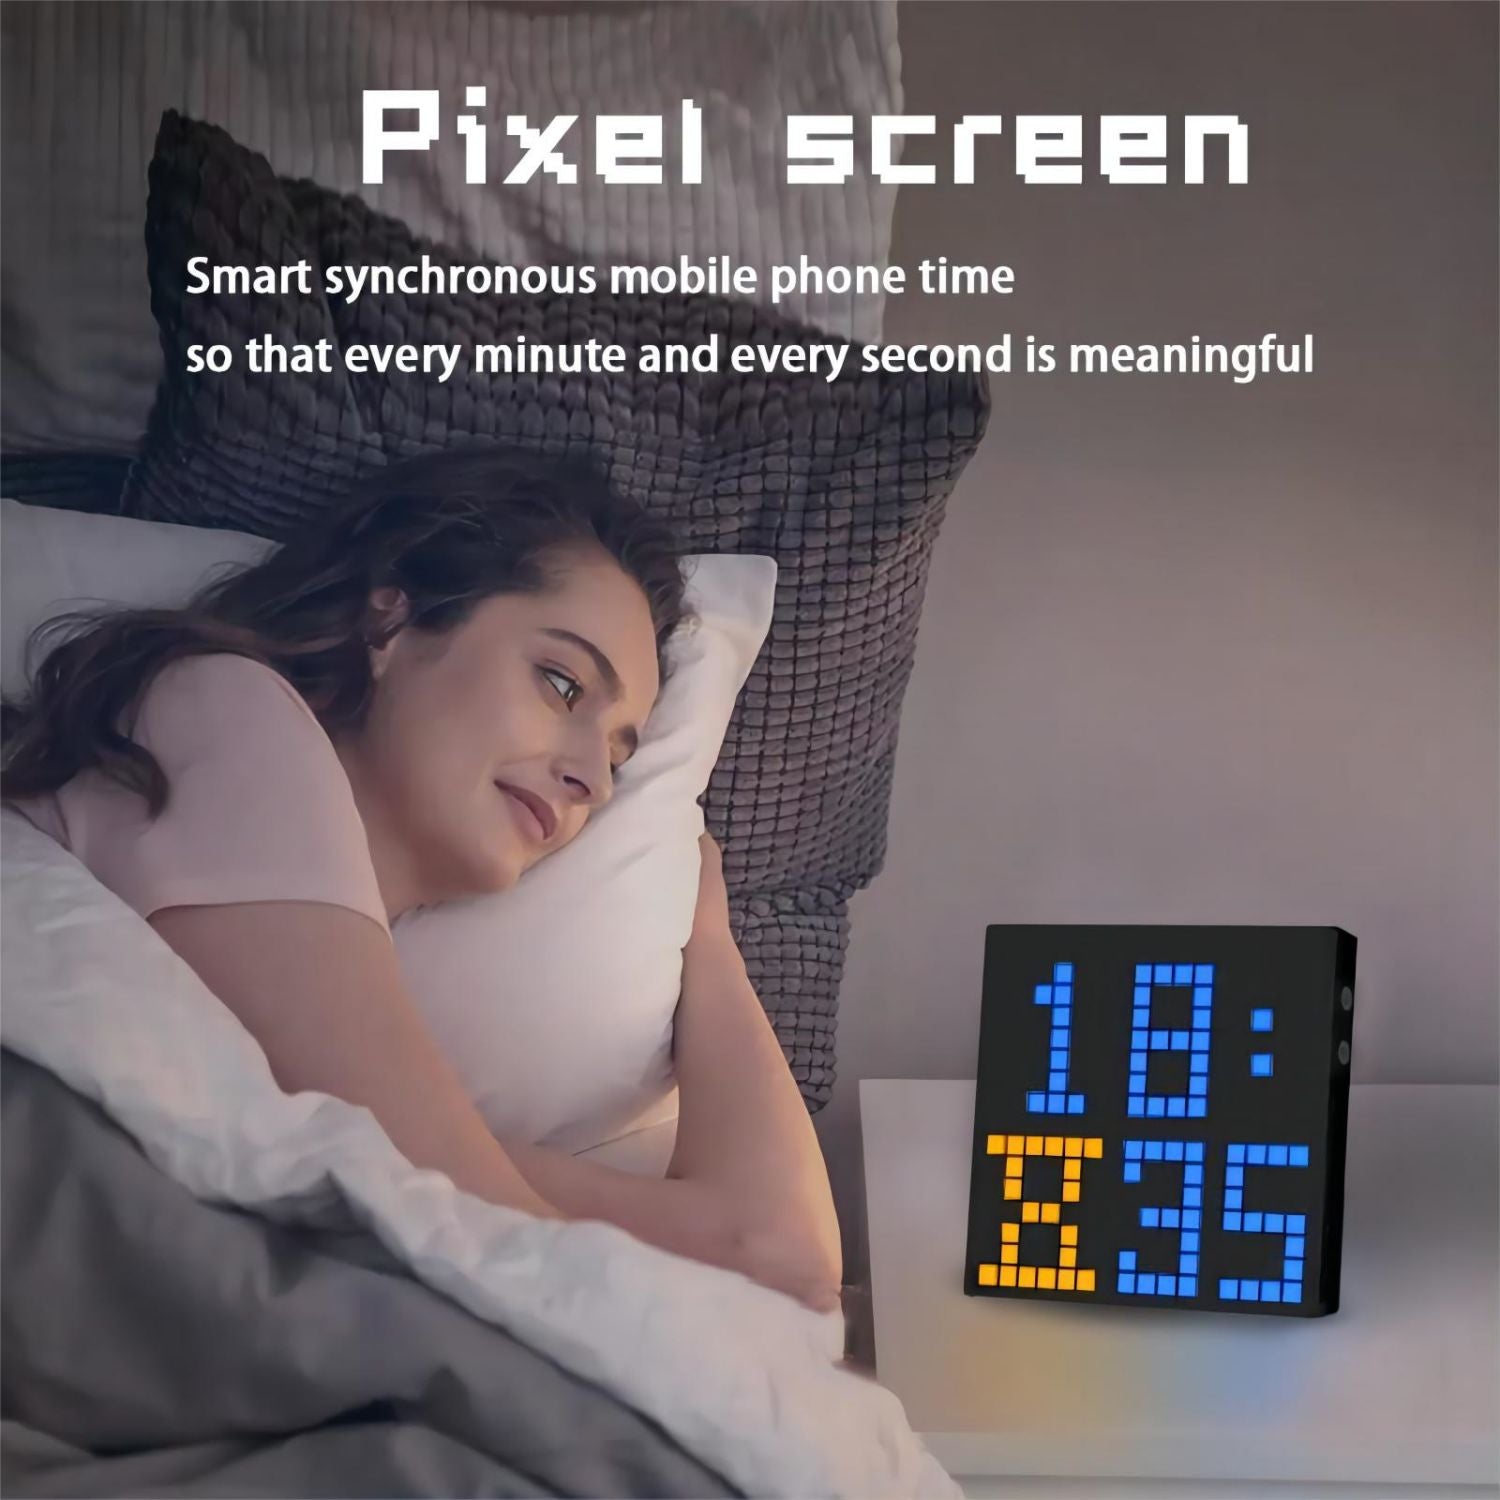 Smart LED Pixel Screen